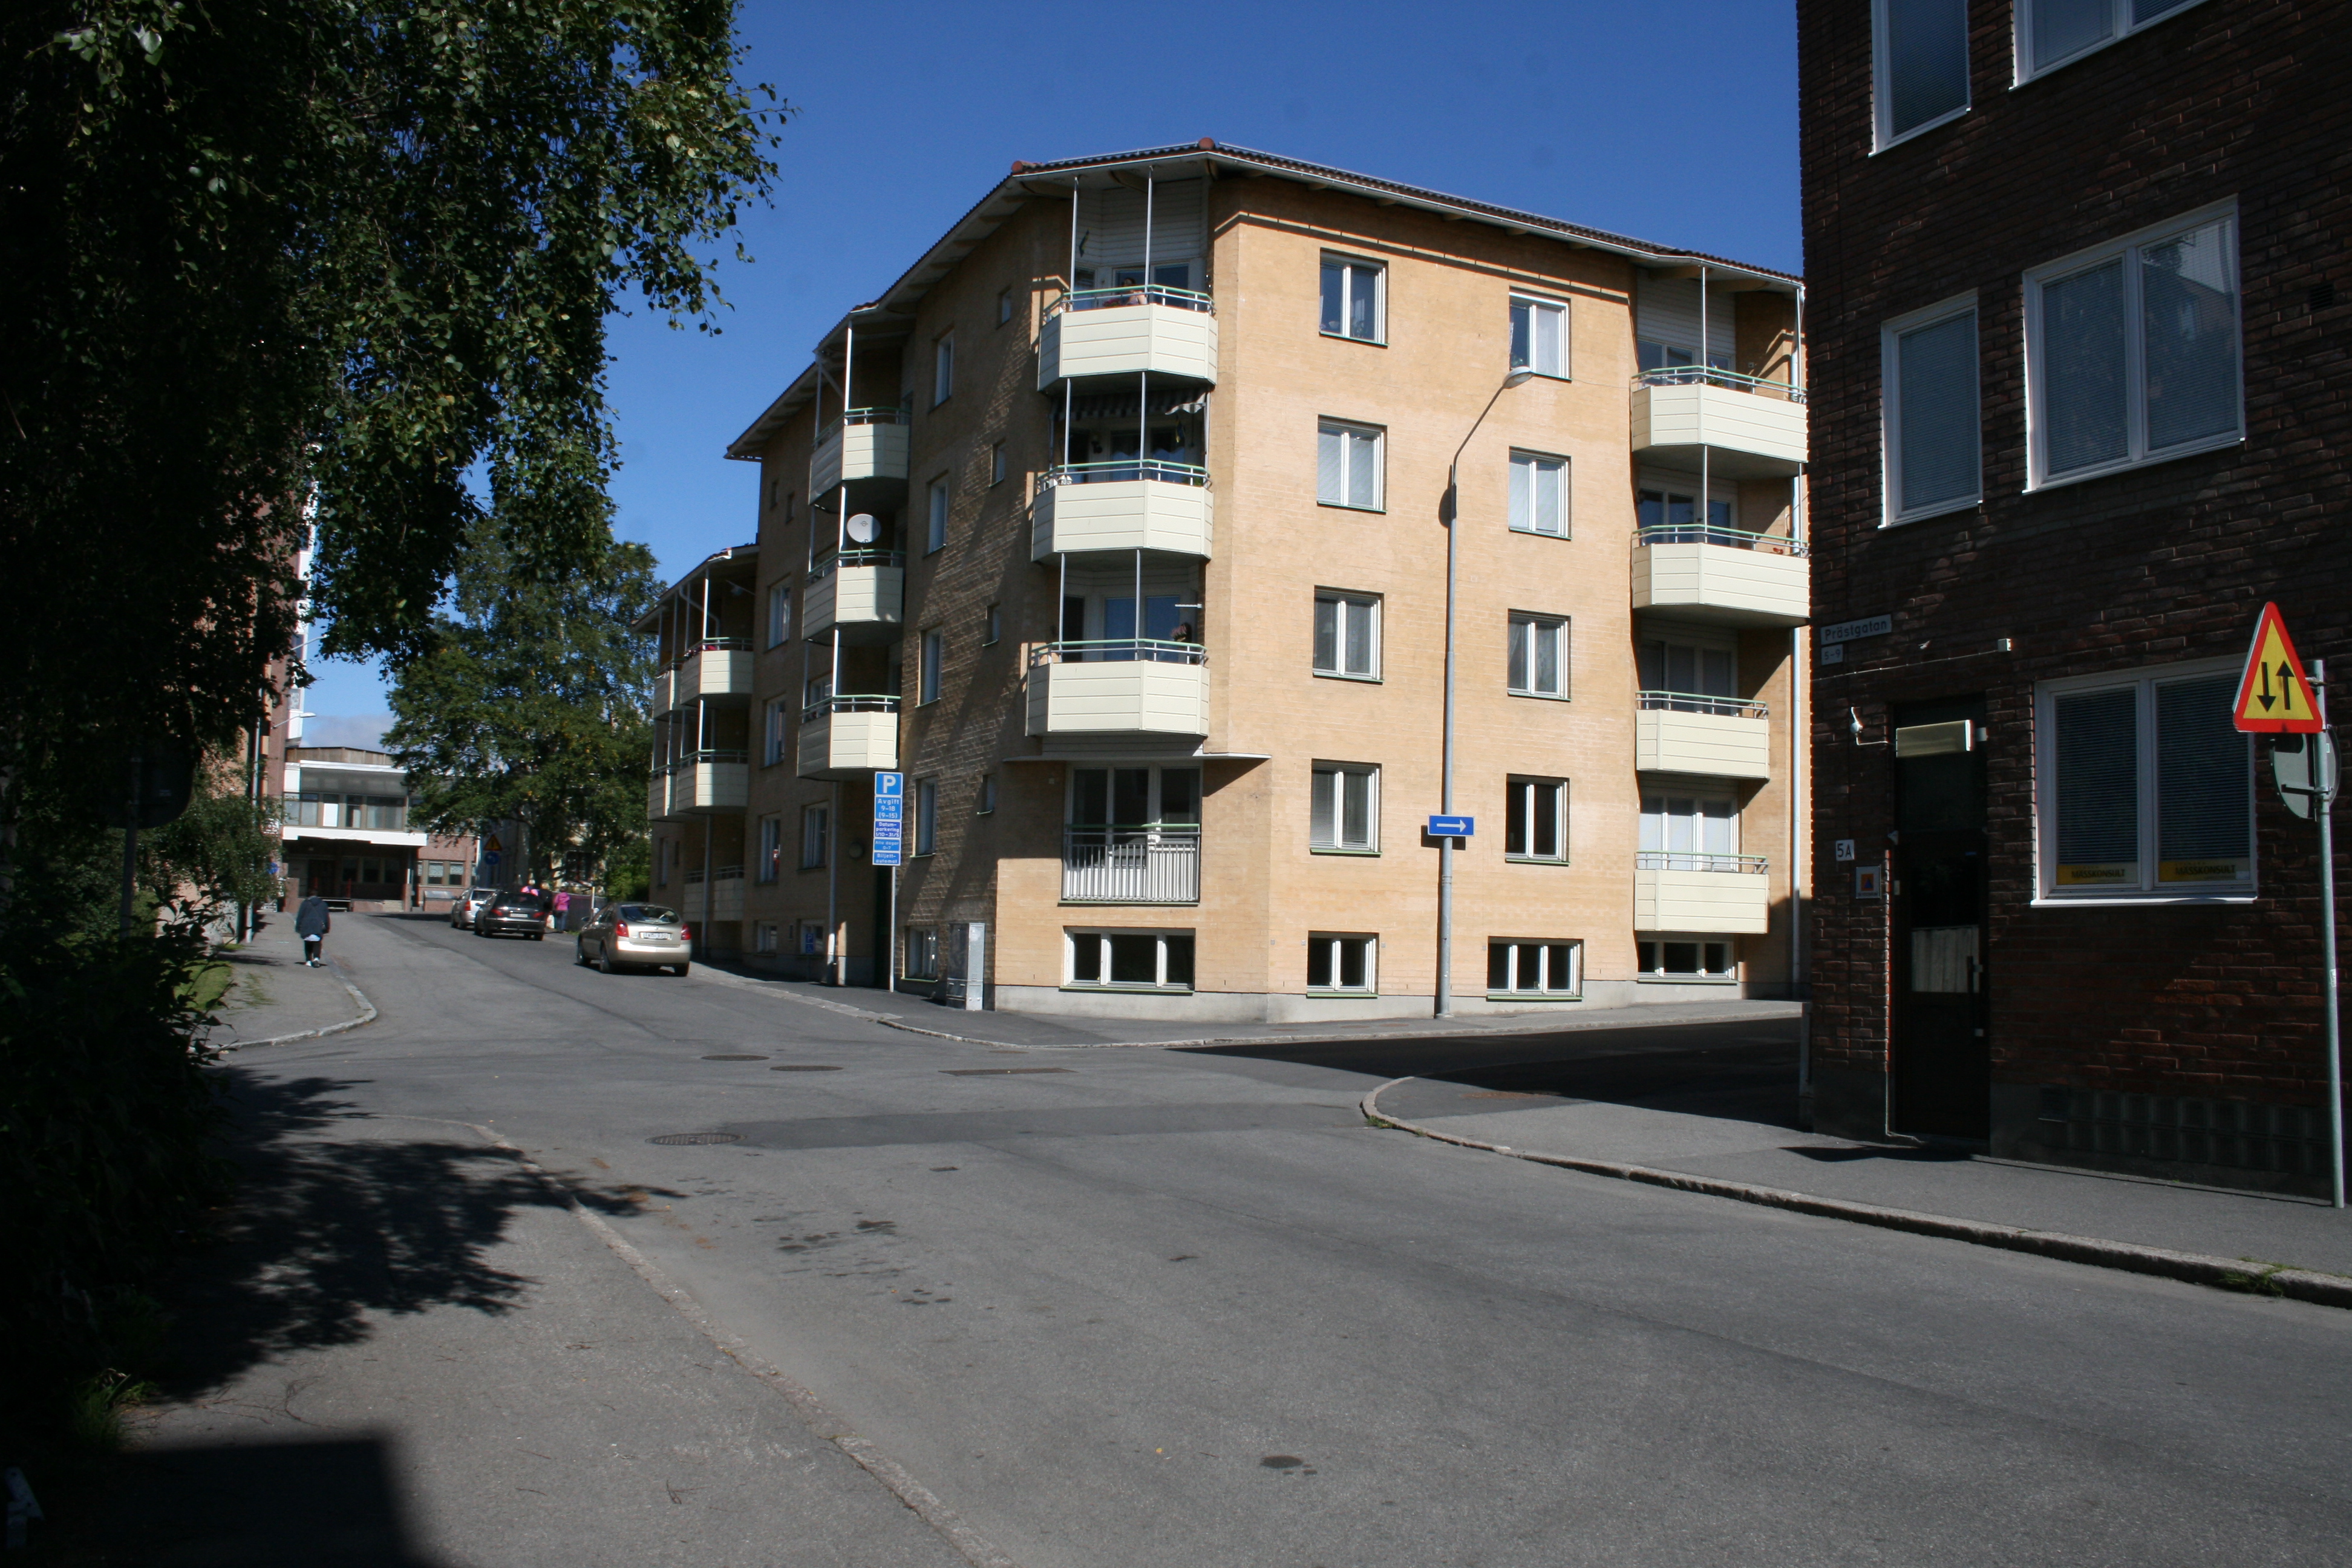 Rådmannen 5, hus 1. Fasader mot Prästgatan/Brogränd.